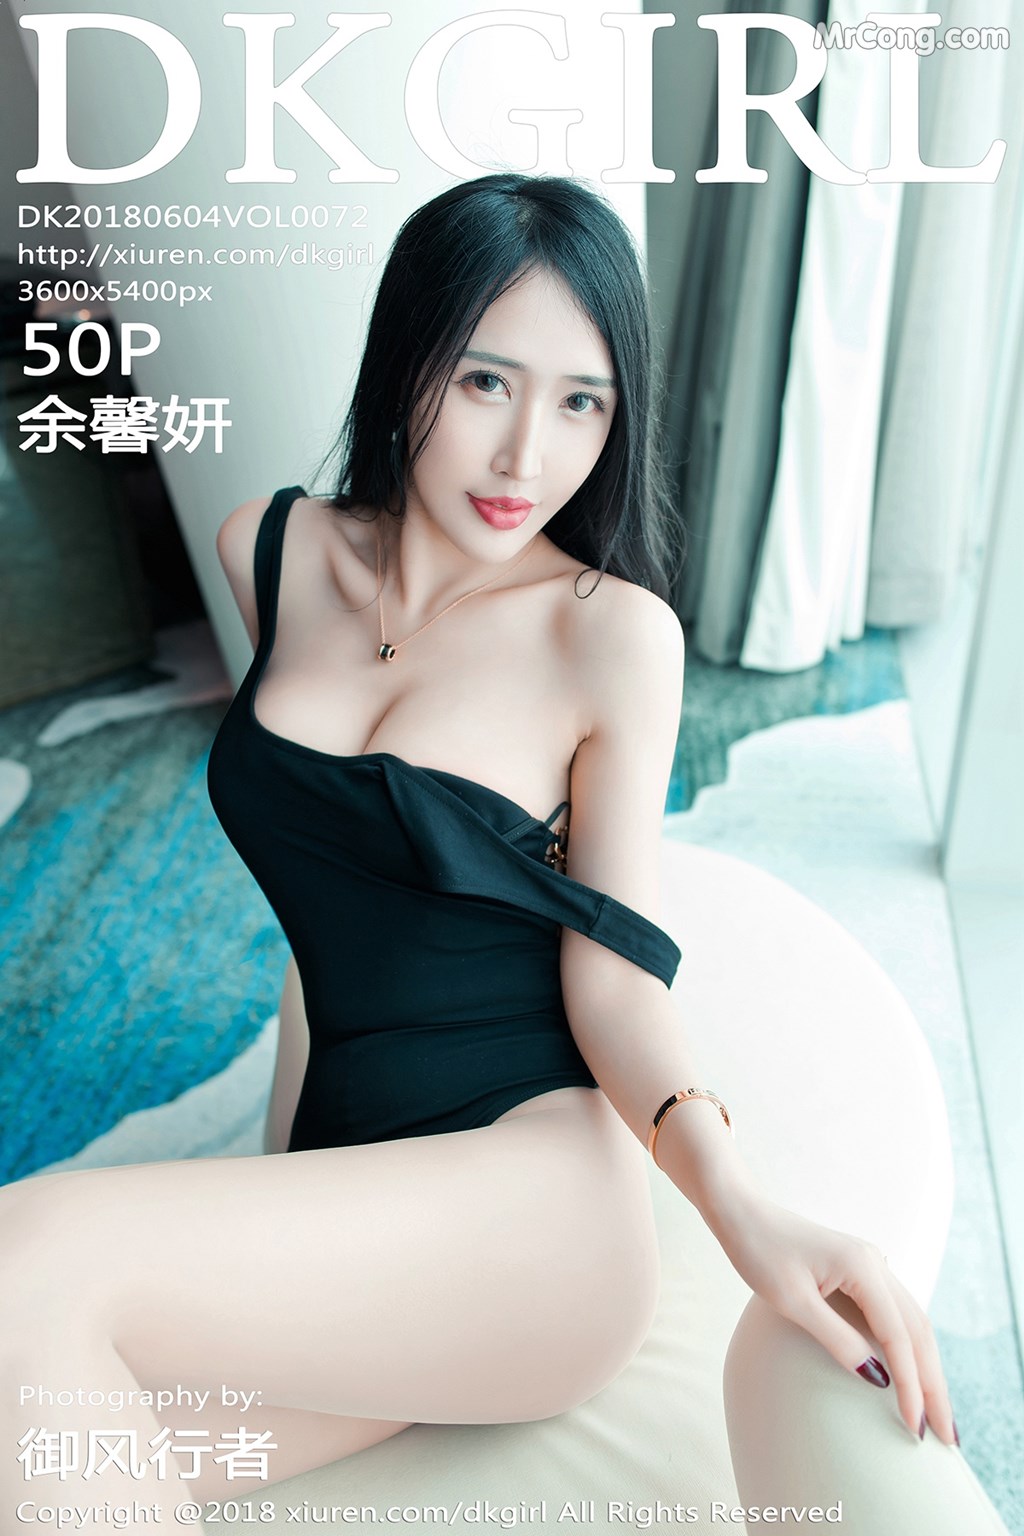 DKGirl Vol.072: Model Yu Xin Yan (余 馨 妍) (51 photos) photo 1-0